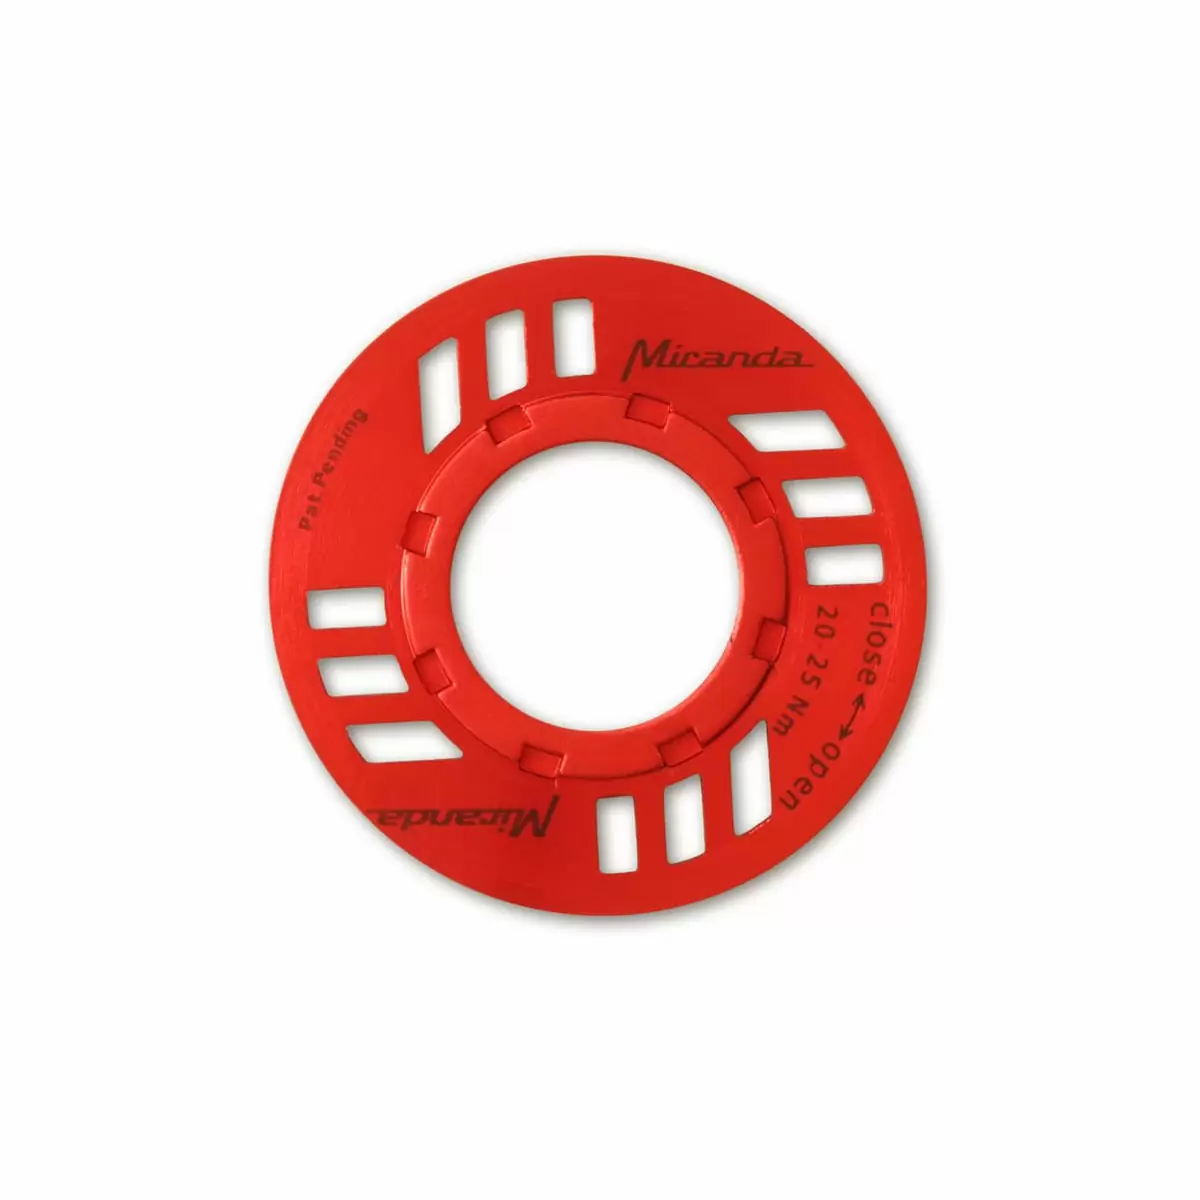 Porca E-Chainguard para unidade de acionamento eBike Bosch vermelho - image